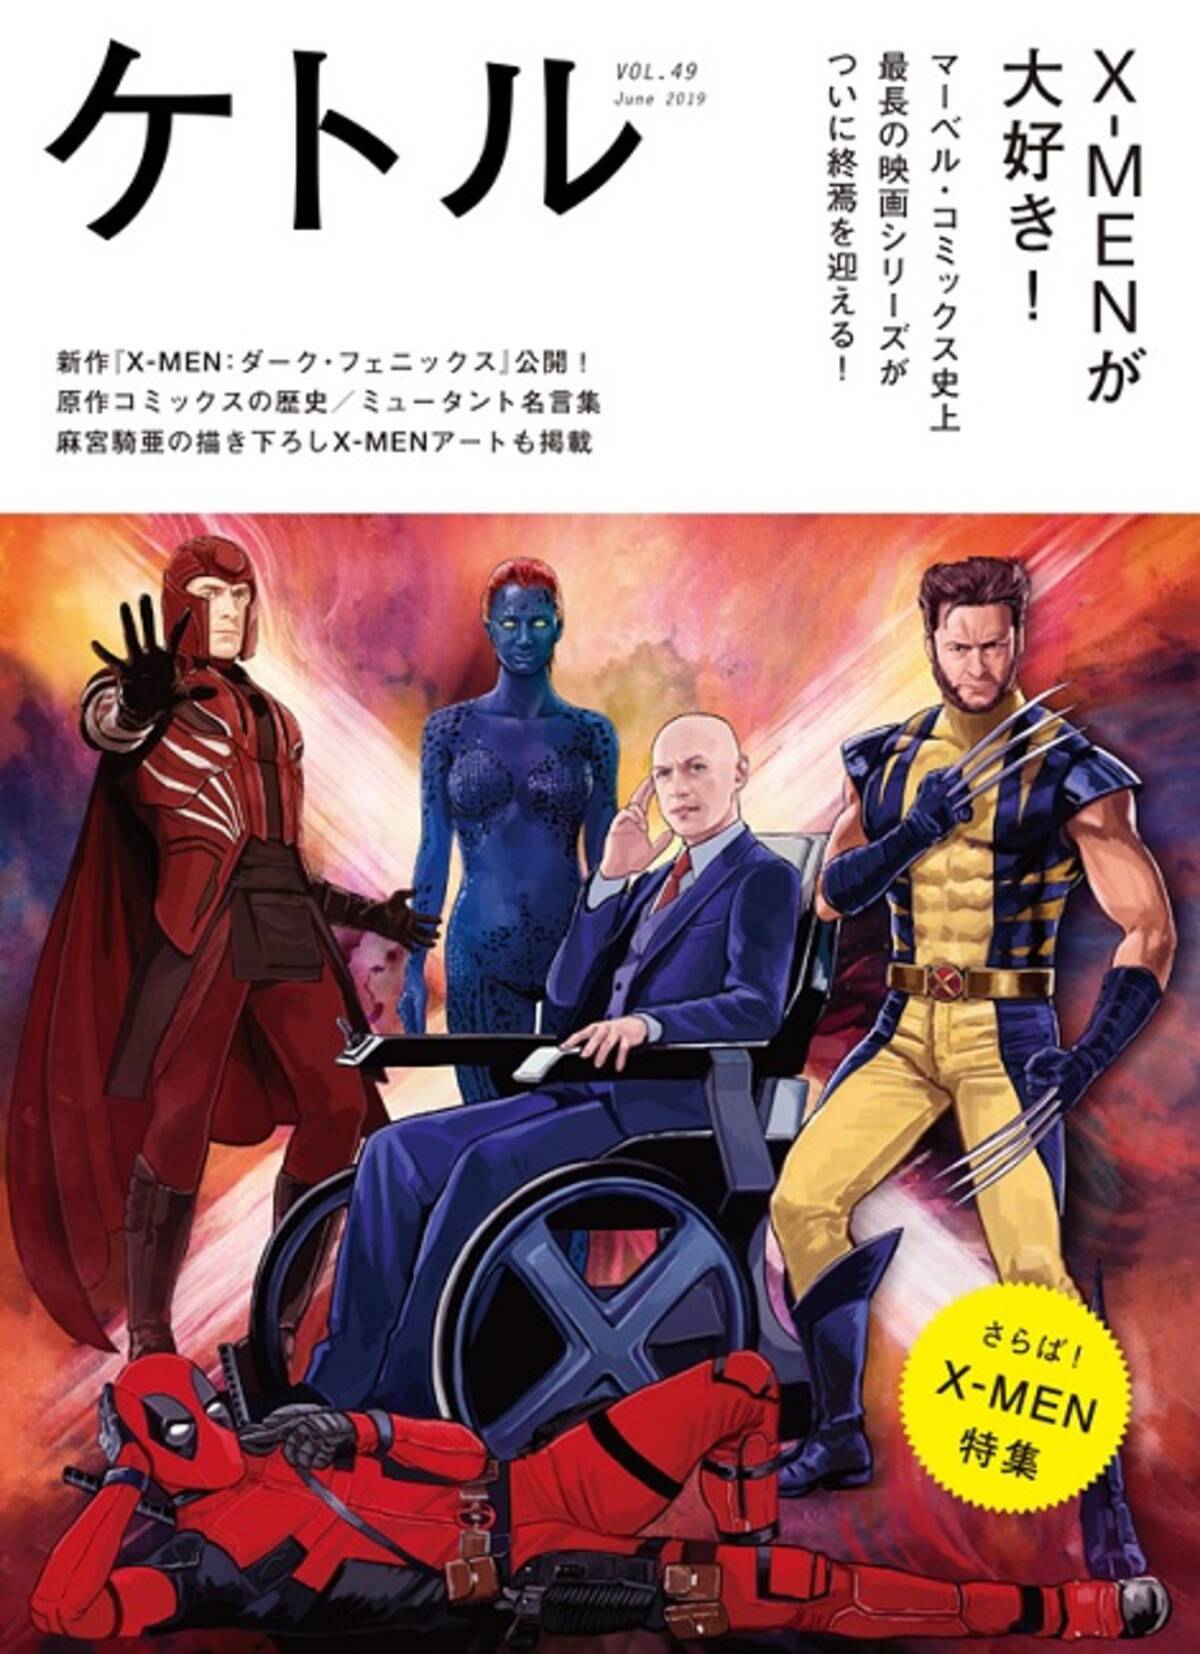 私生活では 2分に１か月半 日本の名車 X Men 映画トリビア集 2019年7月5日 エキサイトニュース